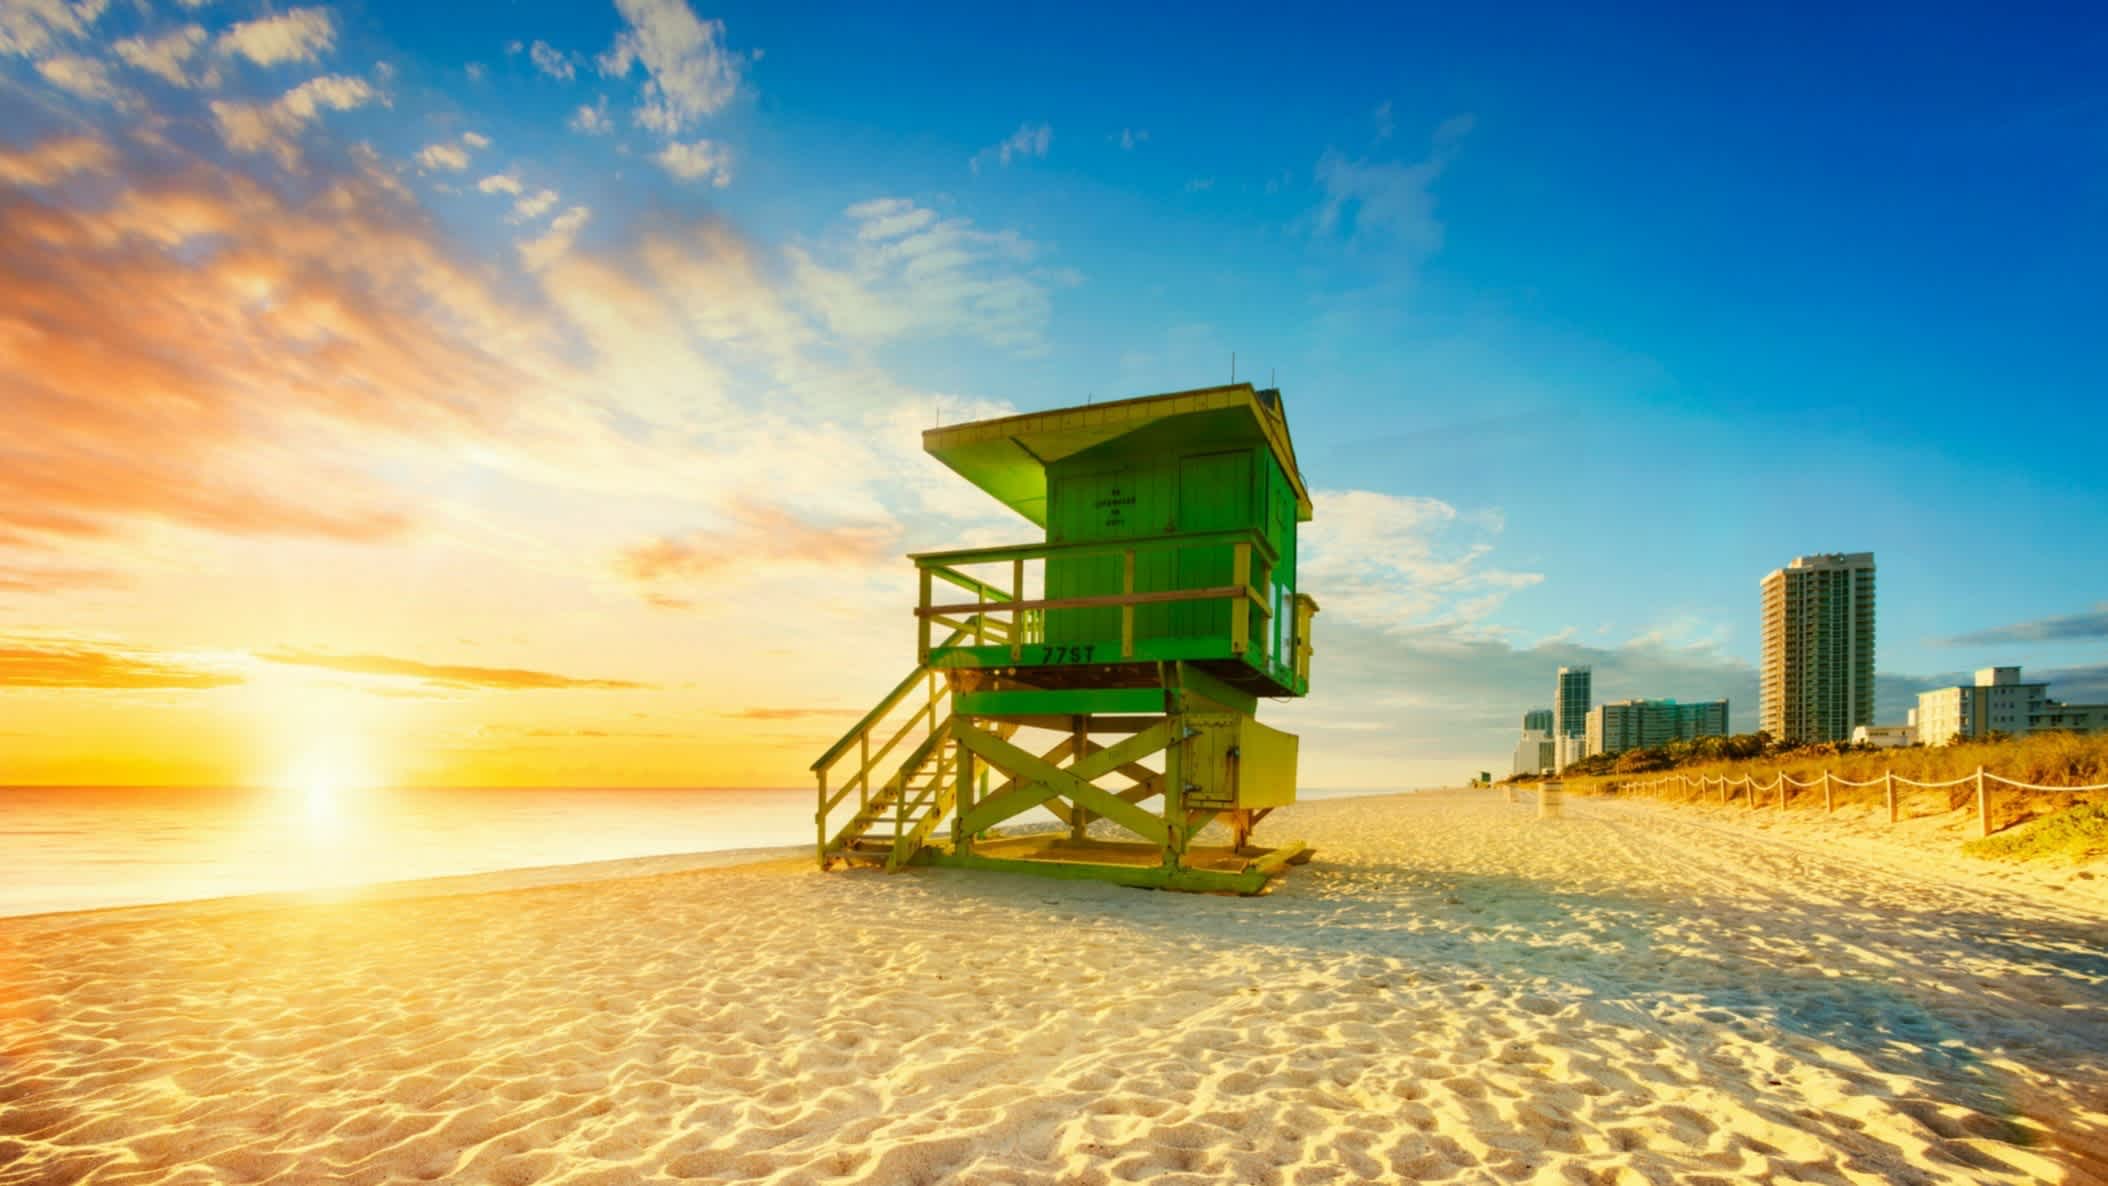 Cabane de maitre nageurs sur le sable de la plage de South Beach, Miami Beach en Floride